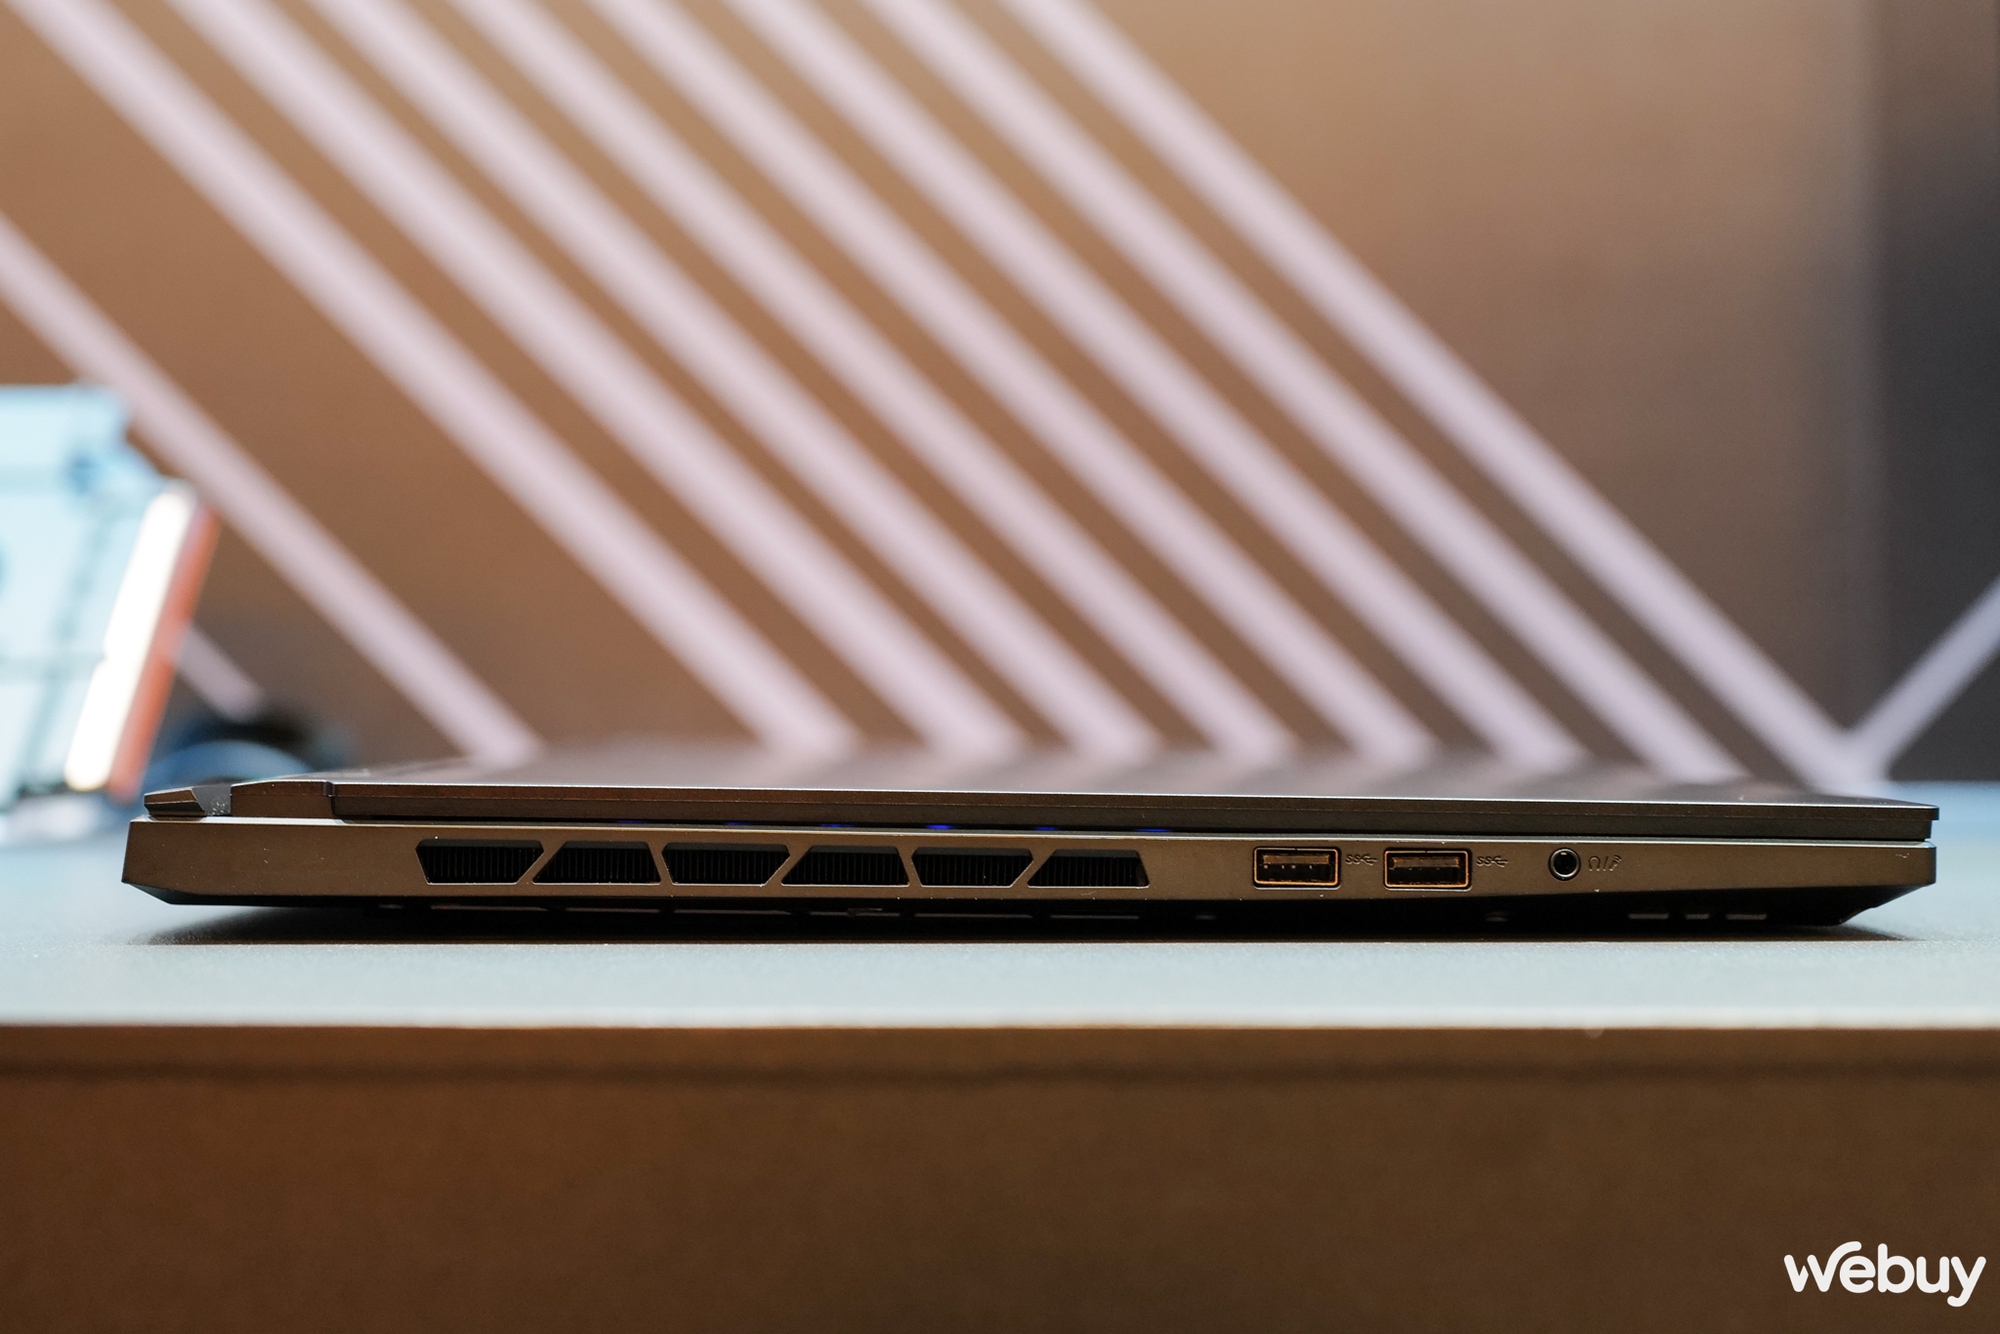 Trên tay bộ 4 laptop Gigabyte AORUS: Đa dạng về kích thước và công nghệ - Ảnh 30.